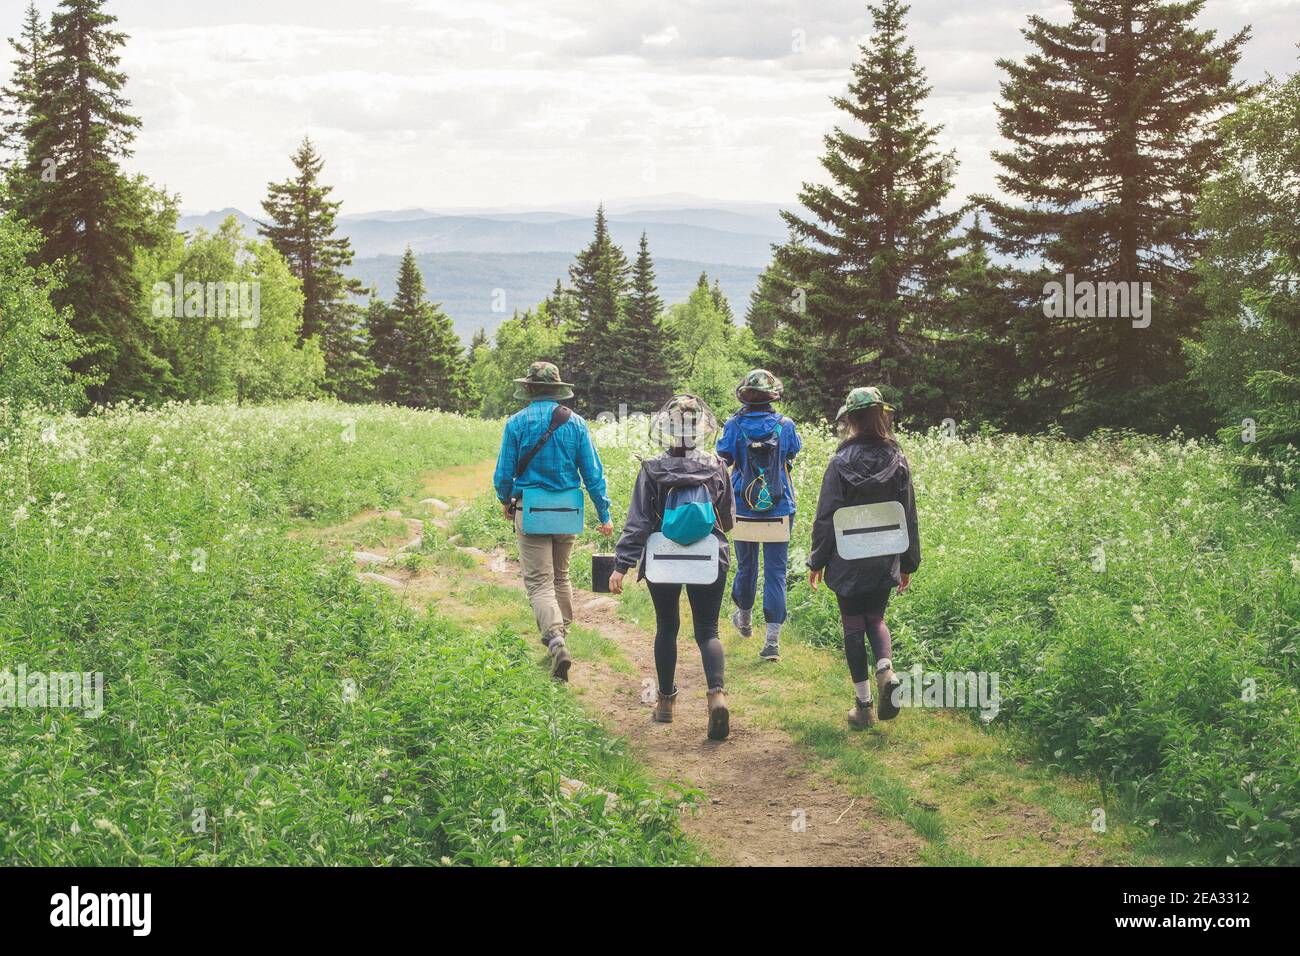 Tre amici allegri stanno viaggiando su un percorso escursionistico in un parco naturale nella foresta selvaggia. Concetto di team building e attività ricreative di gruppo Foto Stock